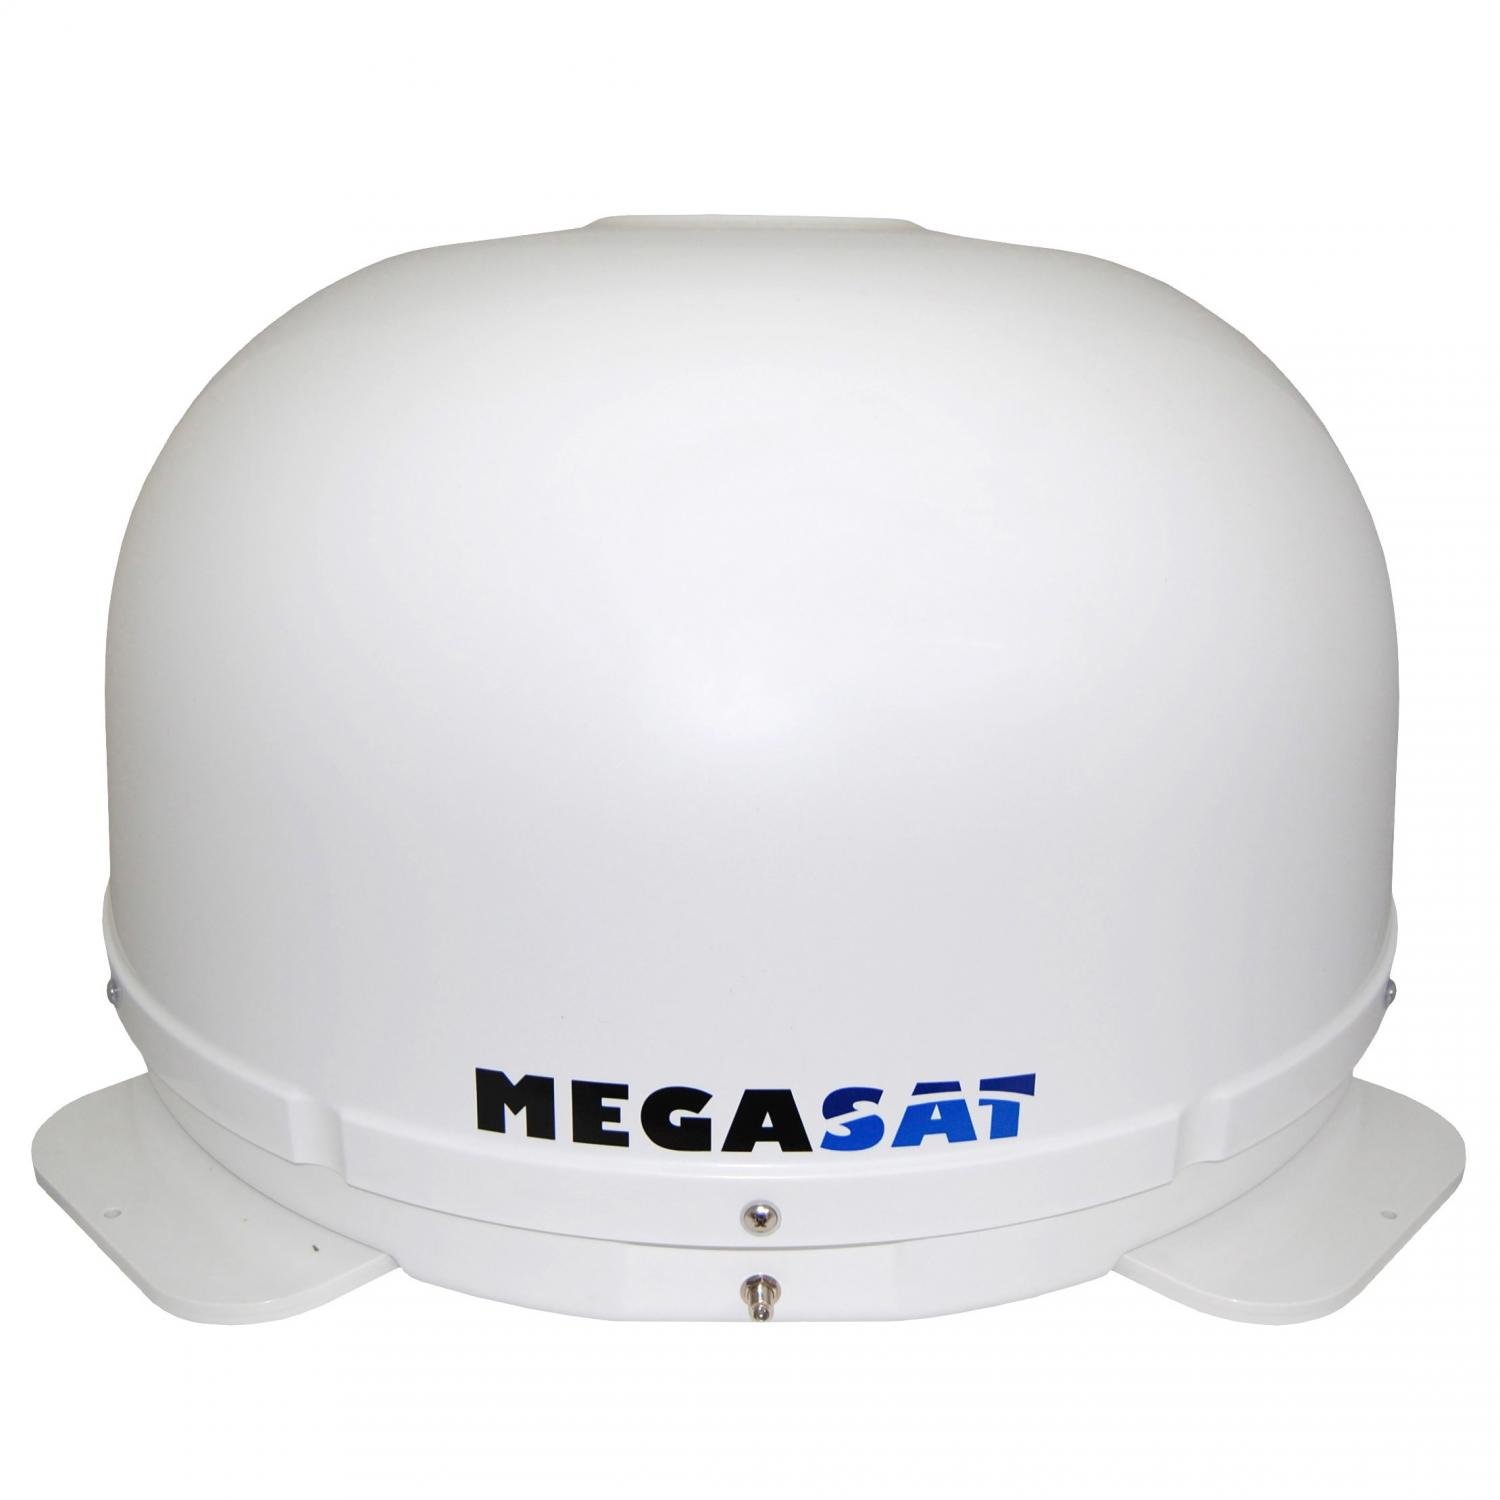 Megasat Automatische Satellitenantenne jetzt bestellen!